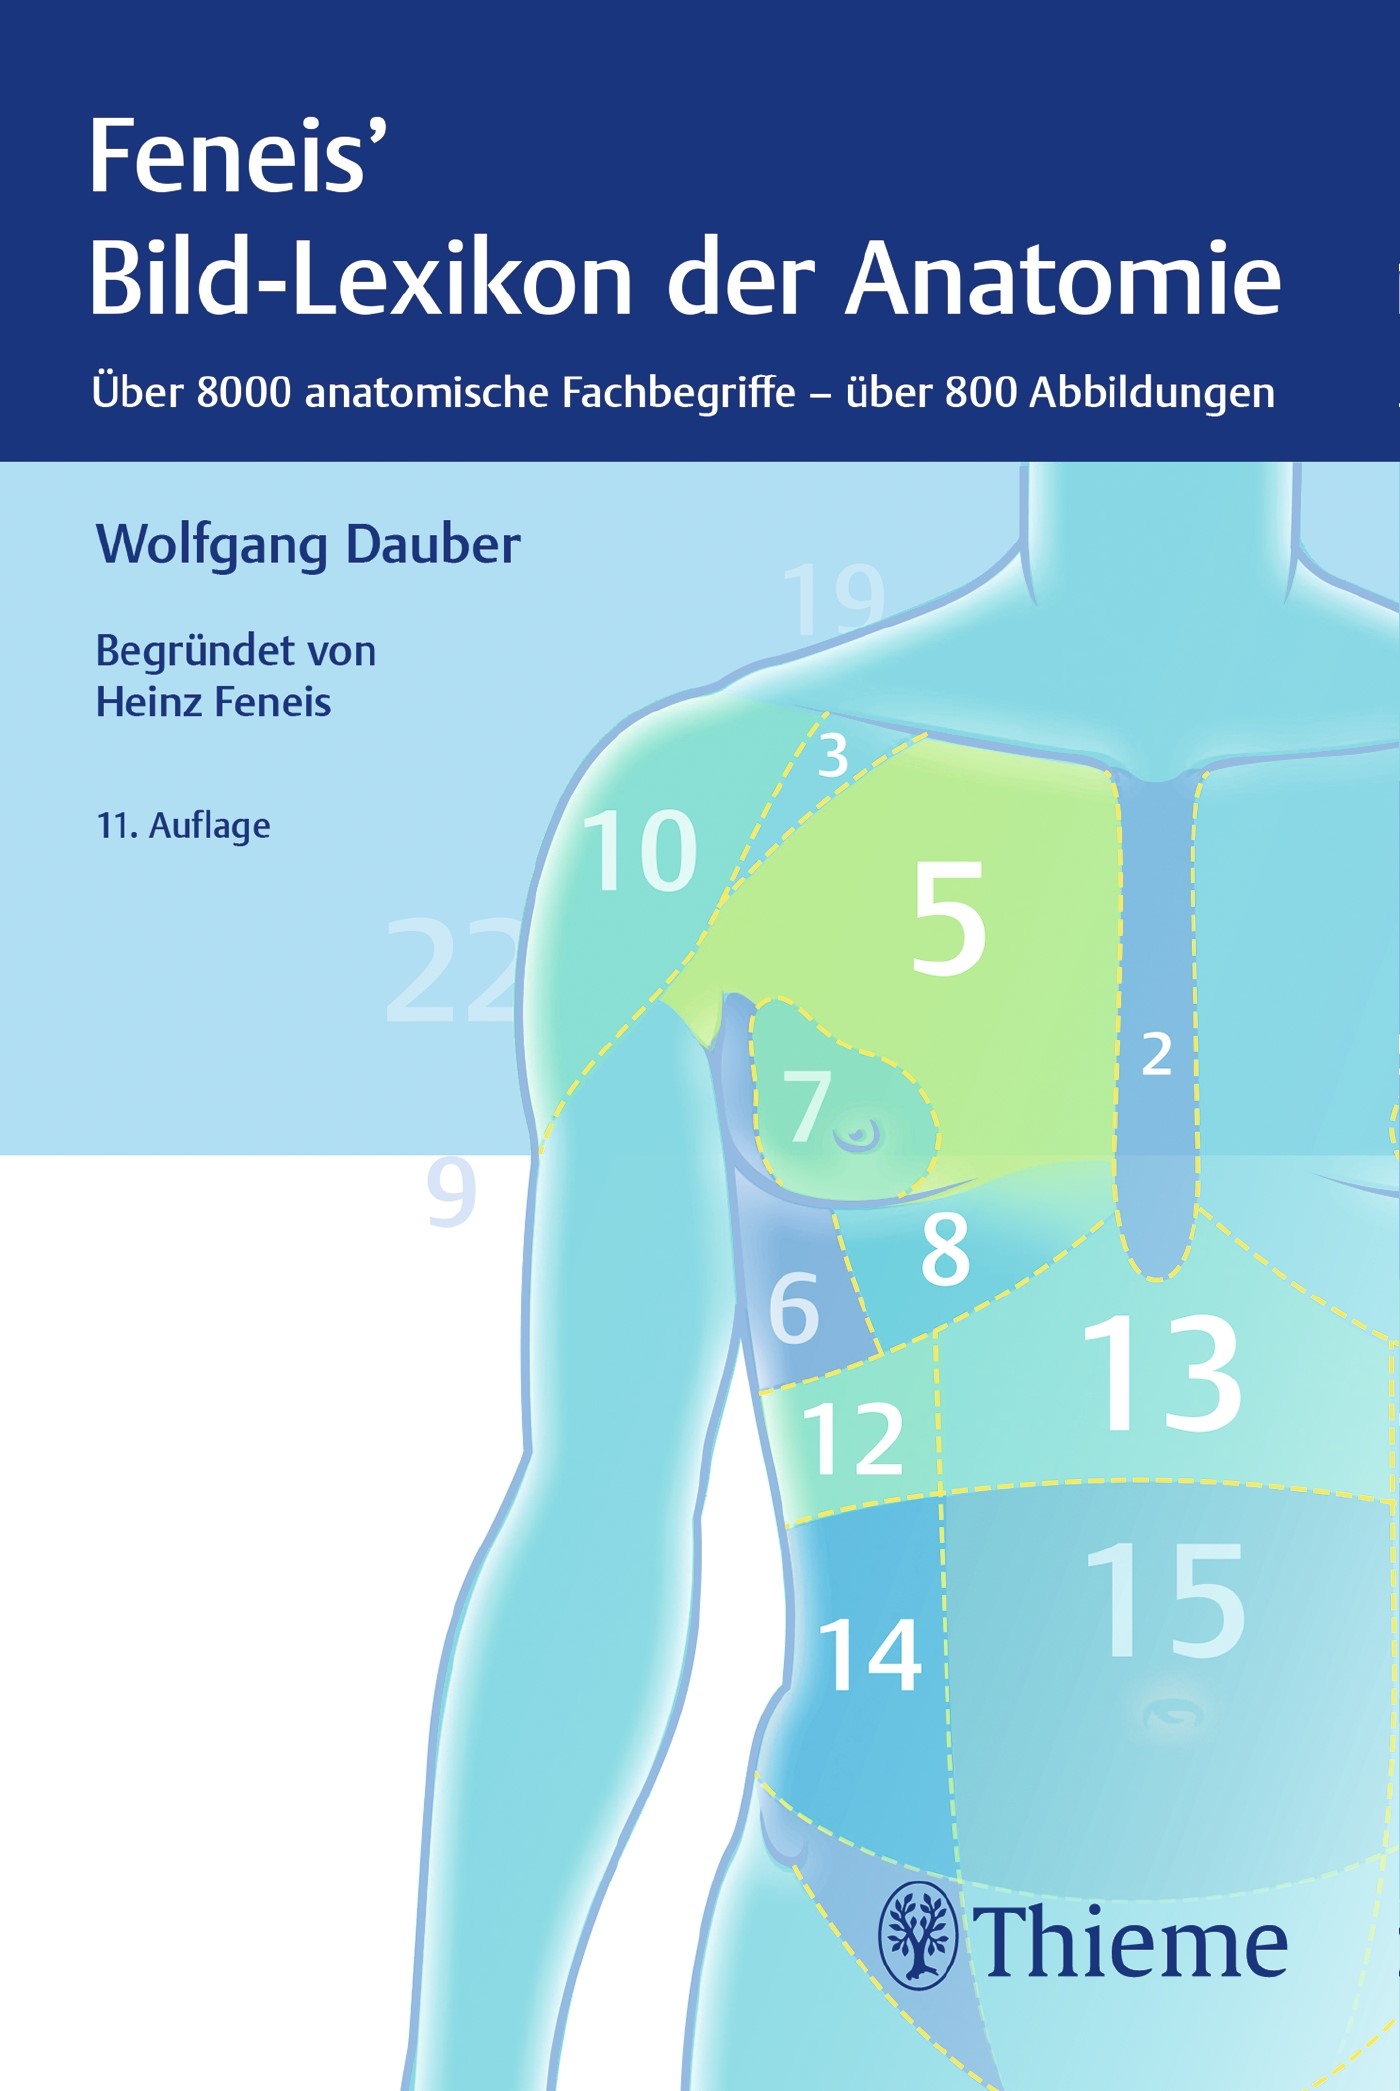 Dauber Feneis Bild Lexikon Der Anatomie 11 Auflage 19 Beck Shop De